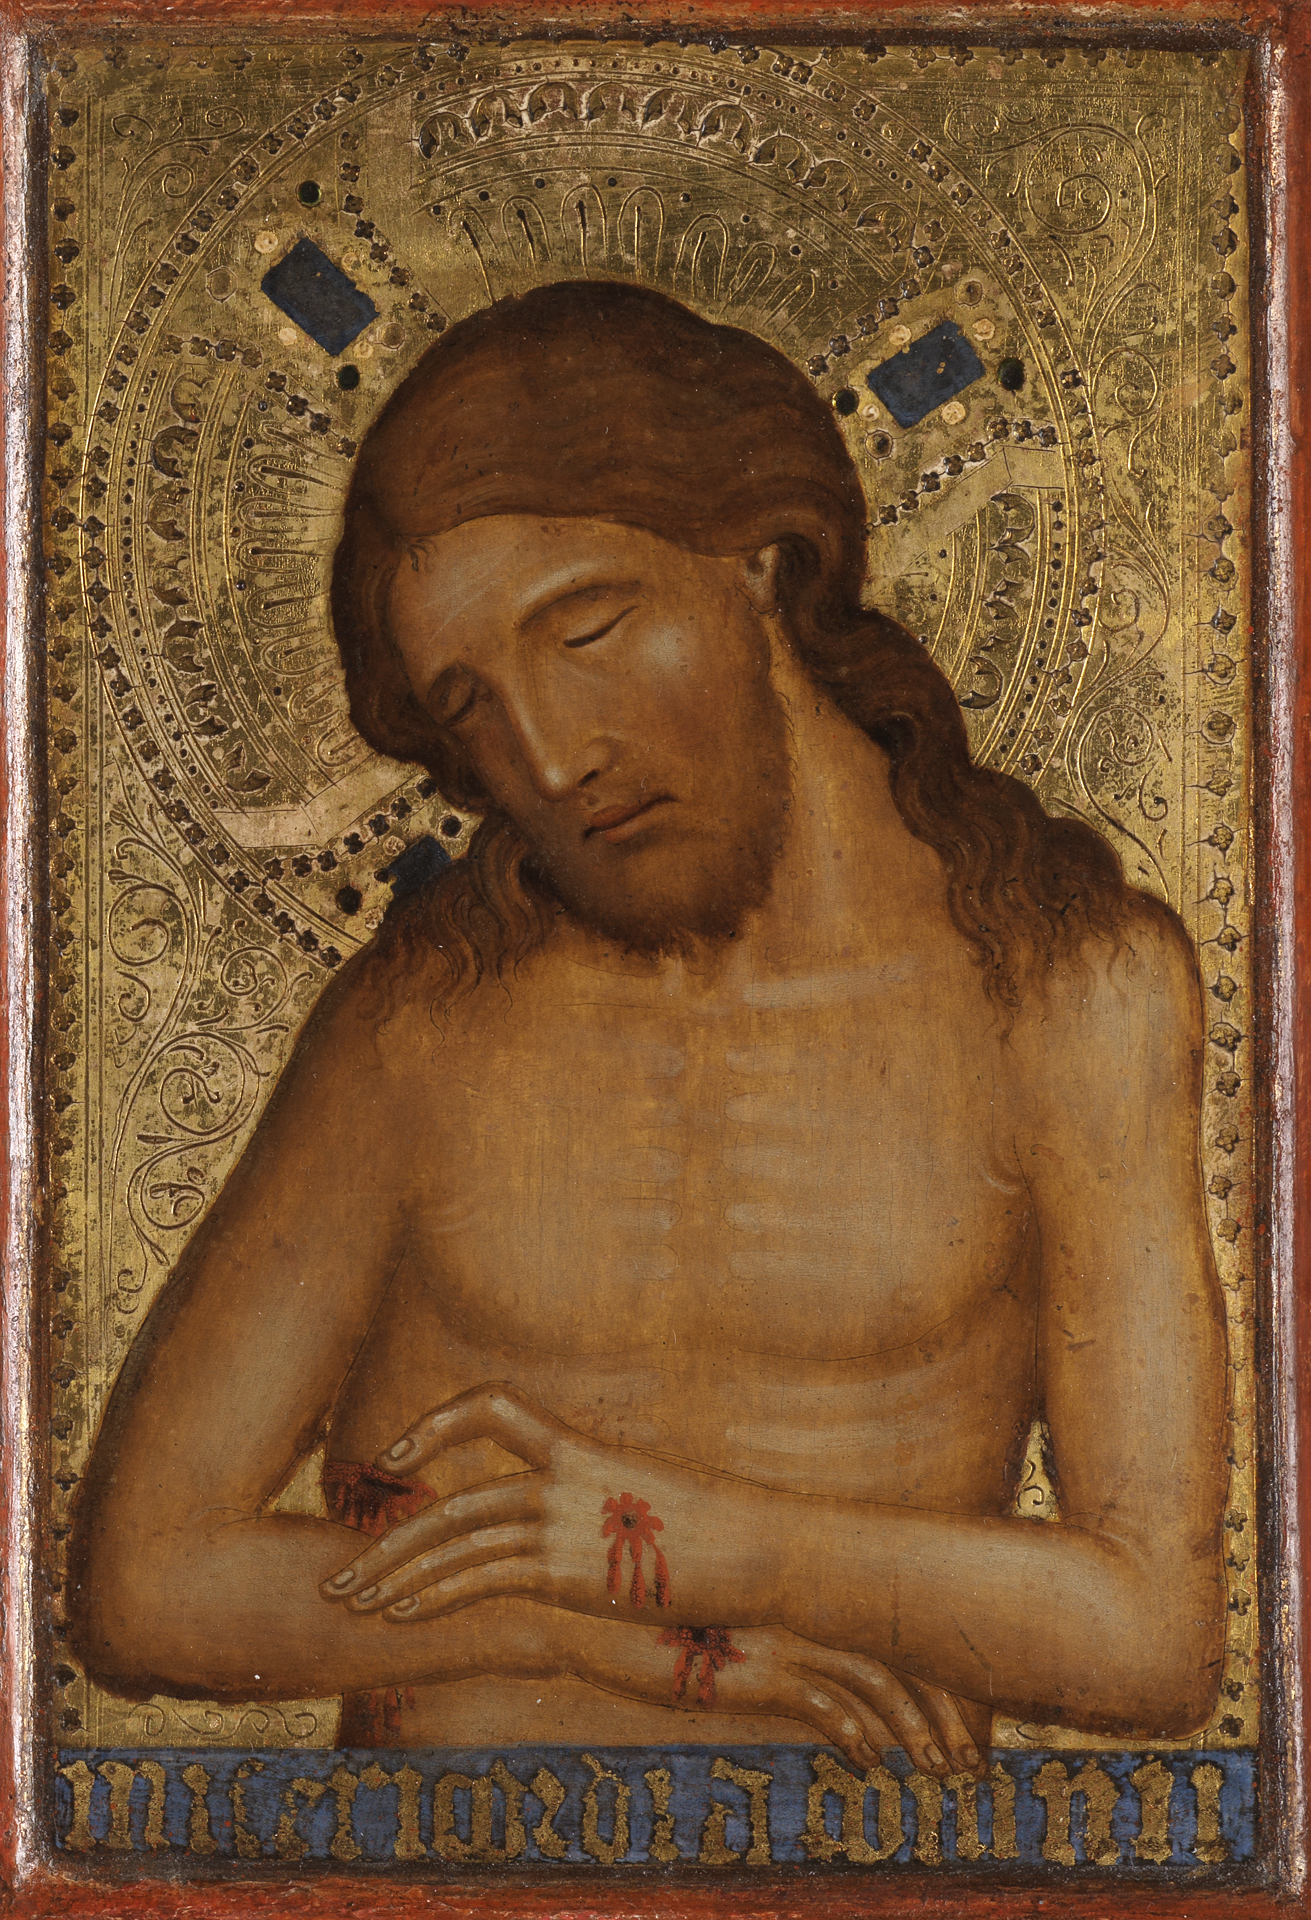 Klappaltar eines böhmischen Meisters. Detail der rechten Tafel: Der leidende, nackte Christus hat die Augen geschlossen und zeigt seine Wundmale.